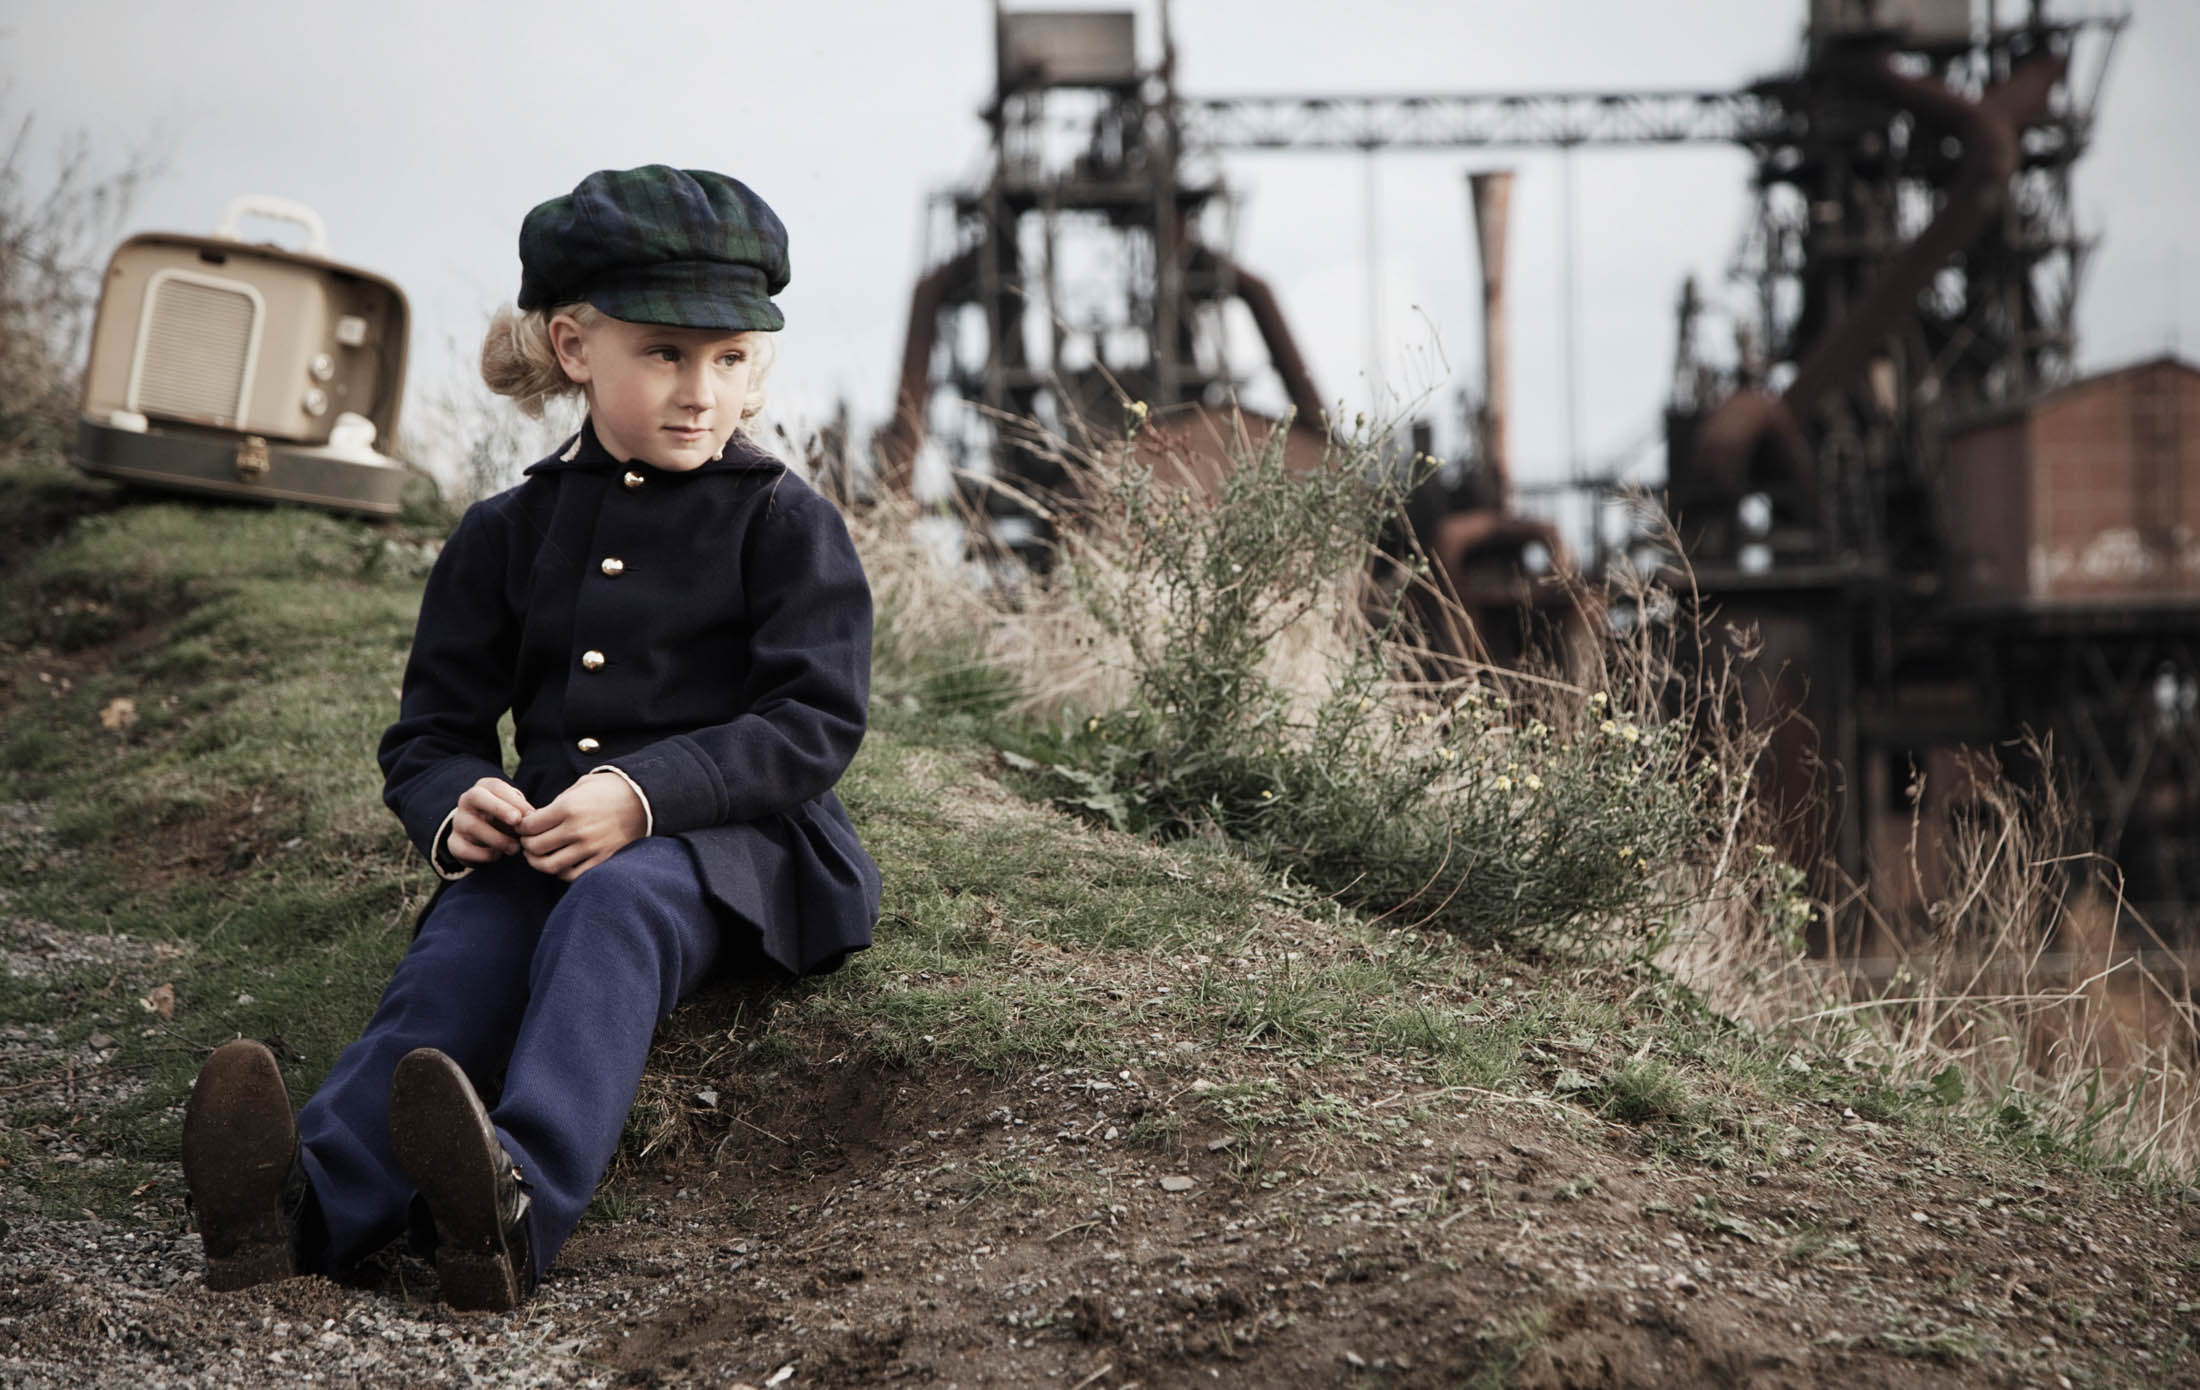 Ein kleines Kind in Vintage-Kleidung sitzt mit einem Stock in der Hand auf einem grasbewachsenen Hügel, hinter ihm steht ein alter Fernseher und in der Ferne sind Industrieanlagen zu sehen. © Fotografie Tomas Rodriguez